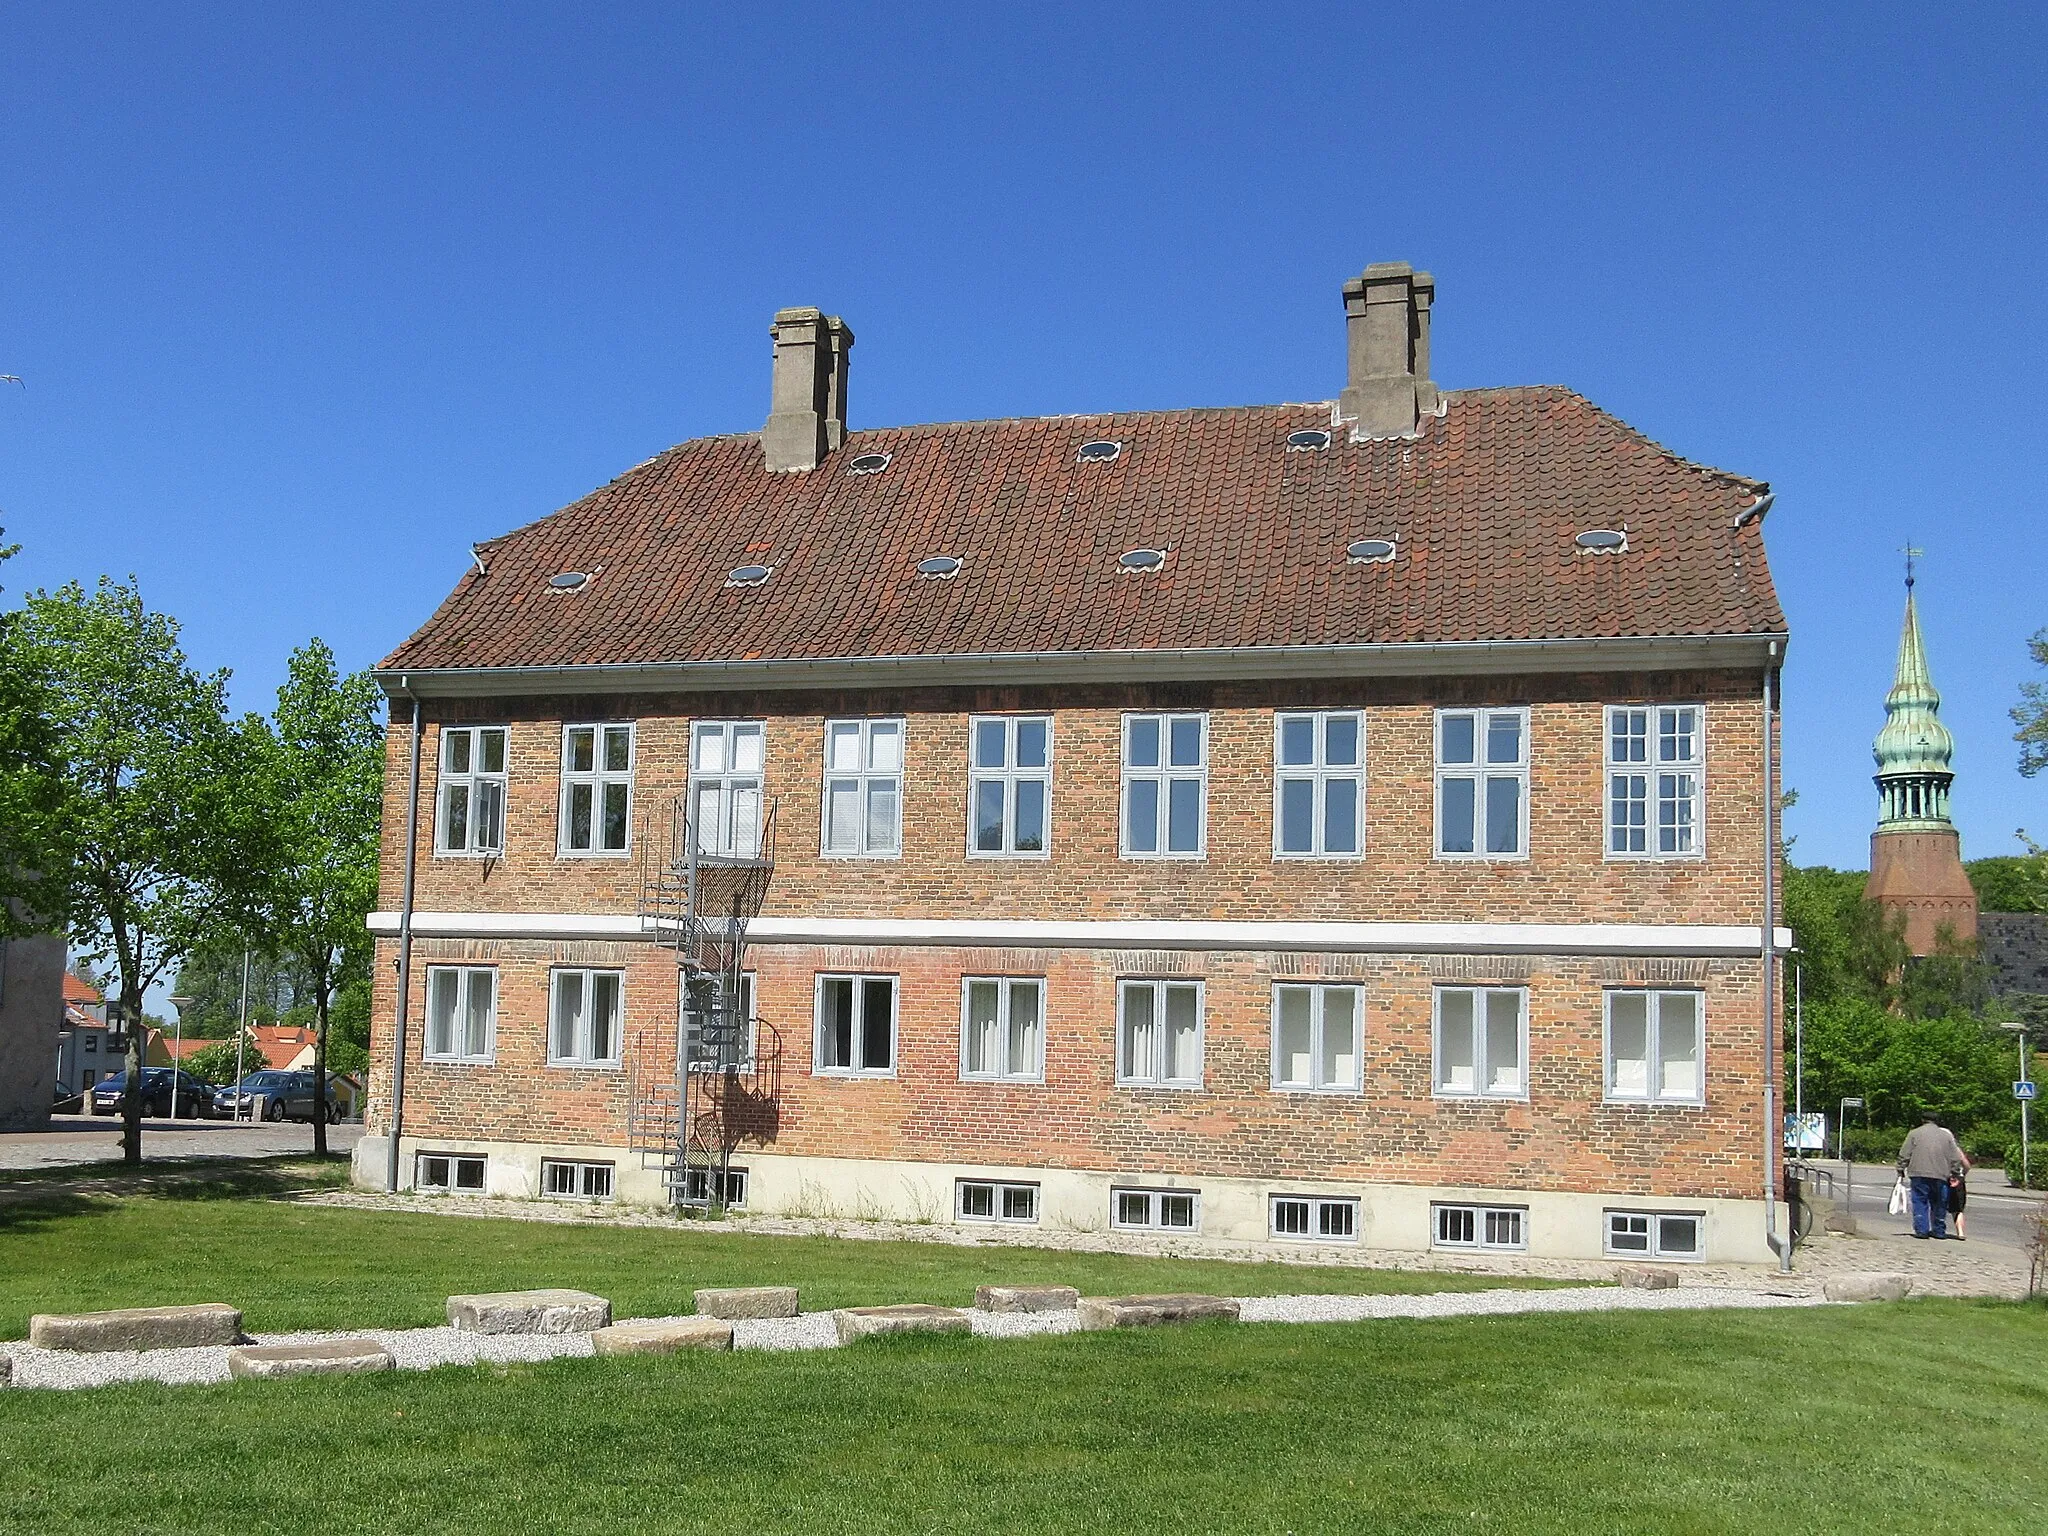 Photo showing: Palæet at Torvet 1 in Frederiksværk, Denmark